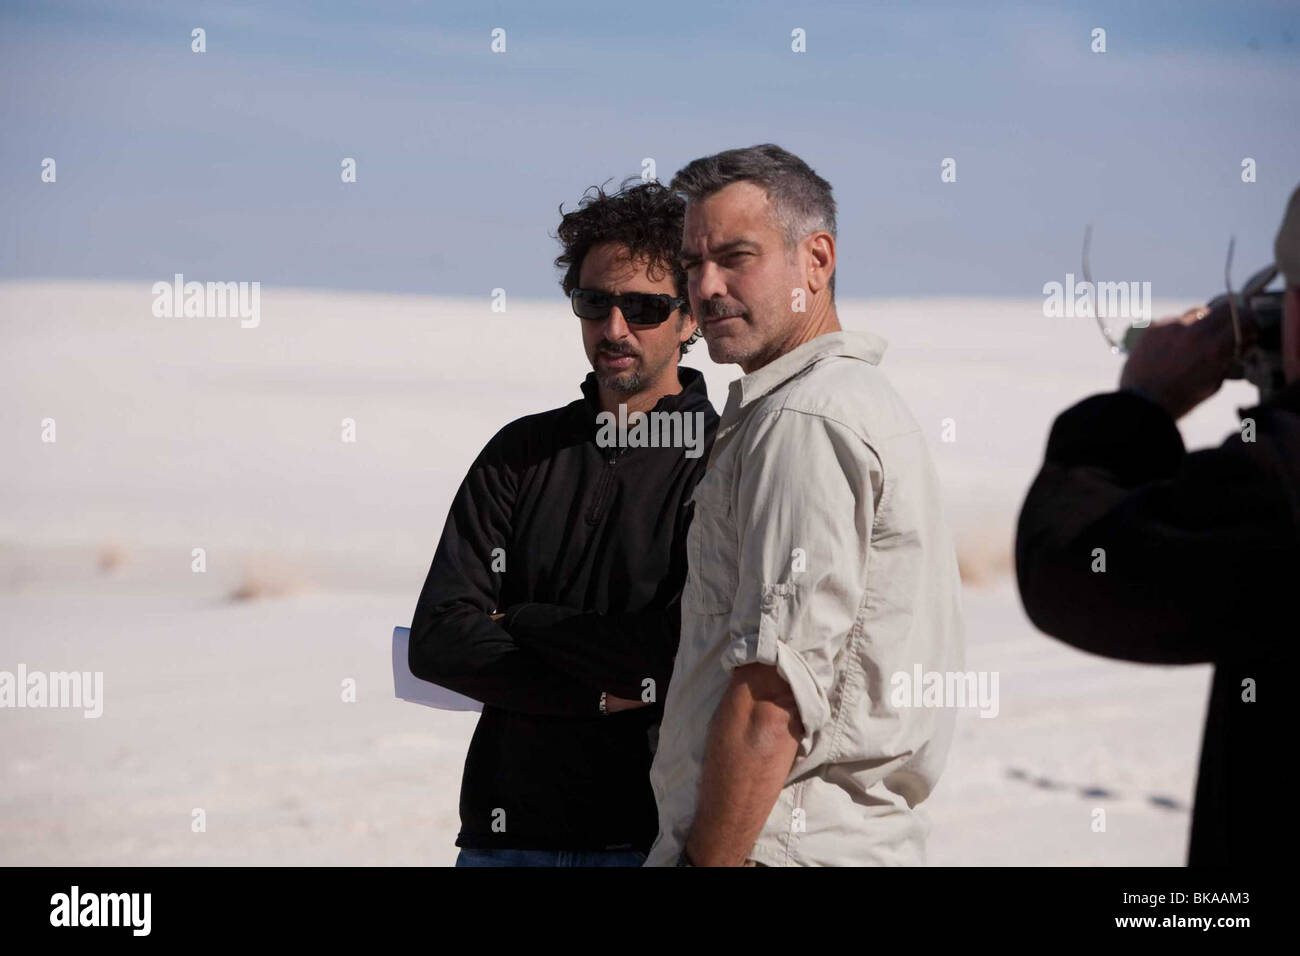 Les hommes qui regardent les chèvres Année : 2009 - USA / UK Réalisateur : Grant Heslov Grant Heslov, George Clooney, de prise de vue photo Banque D'Images